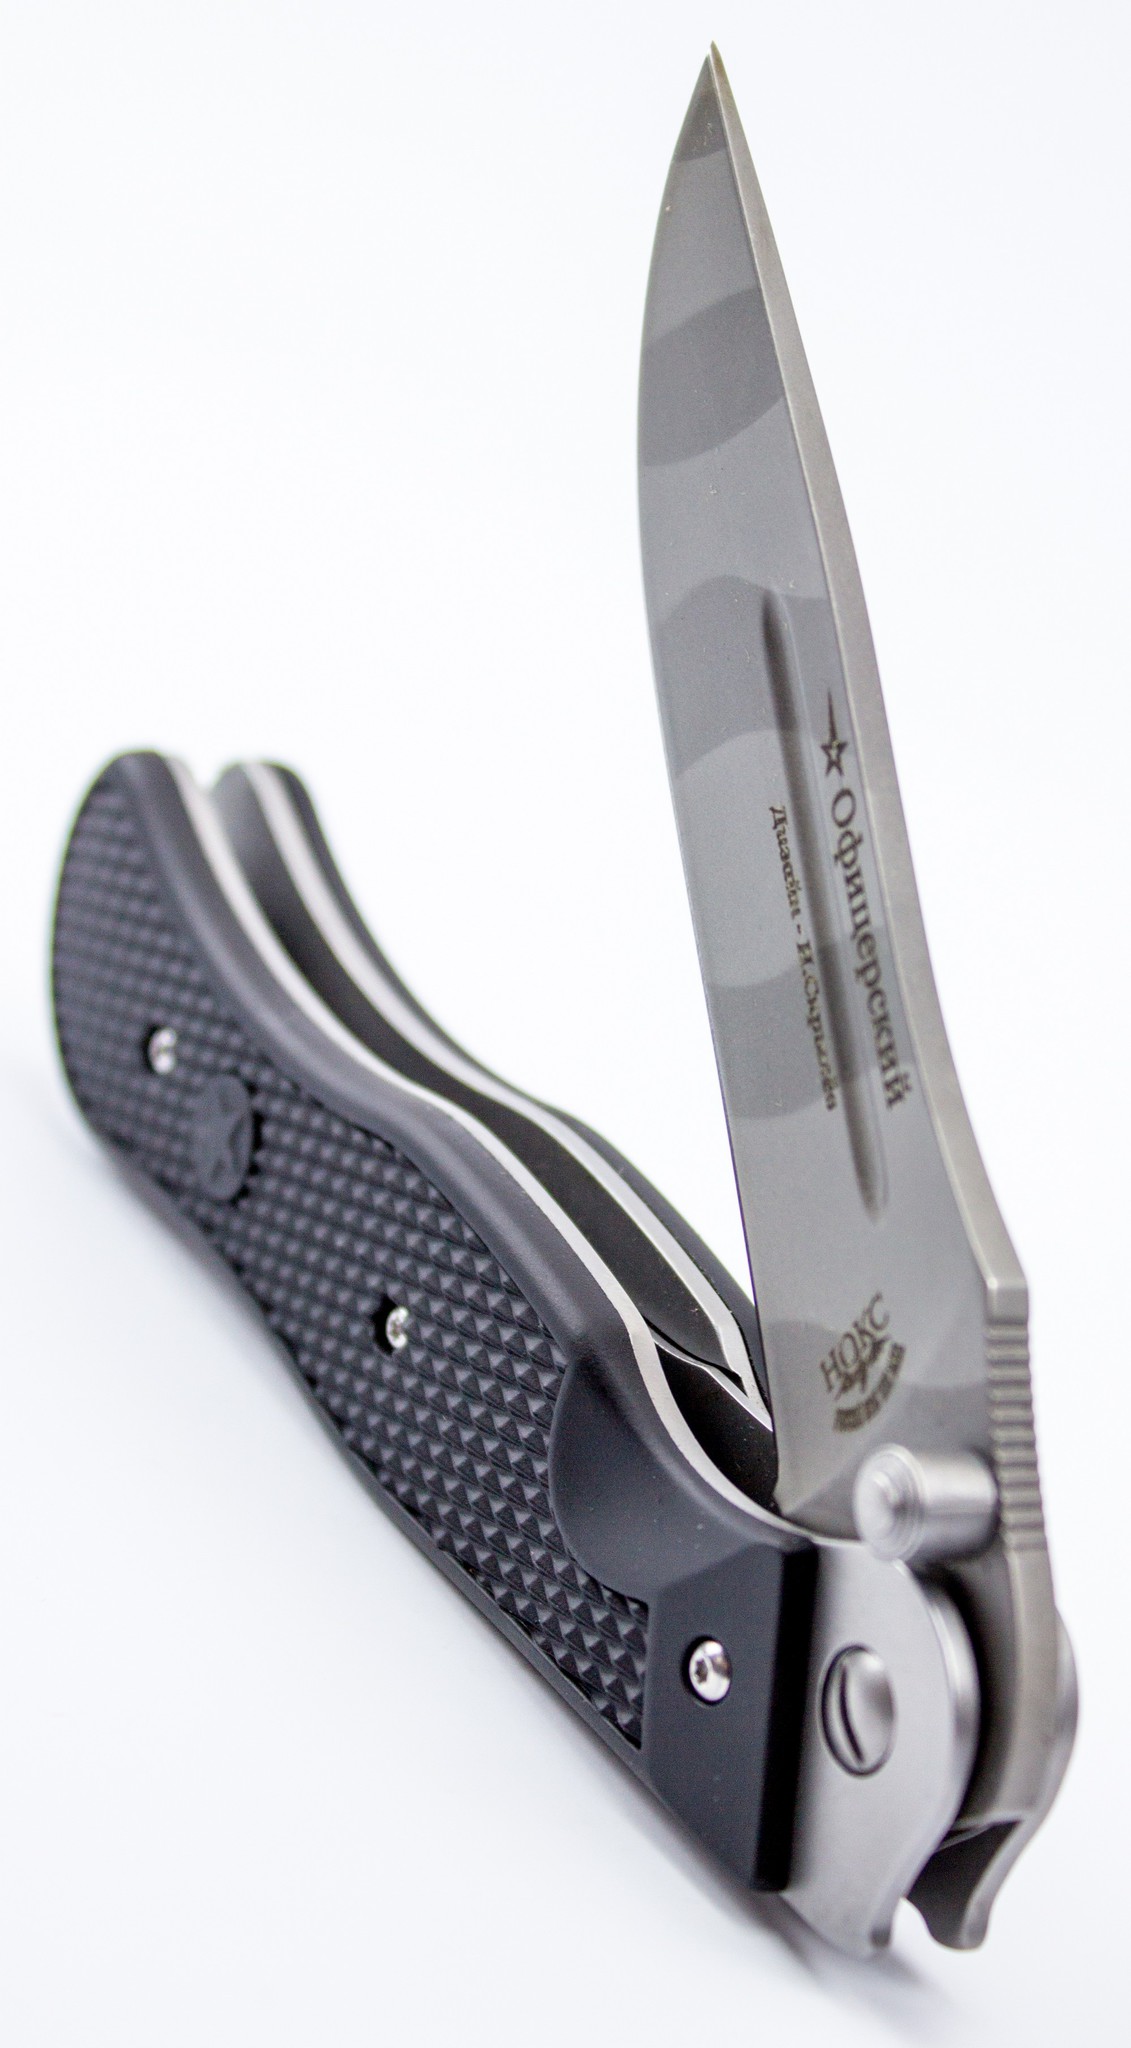  нож Офицерский, камуфляж, 310-880903 по цене 1750.0 руб .